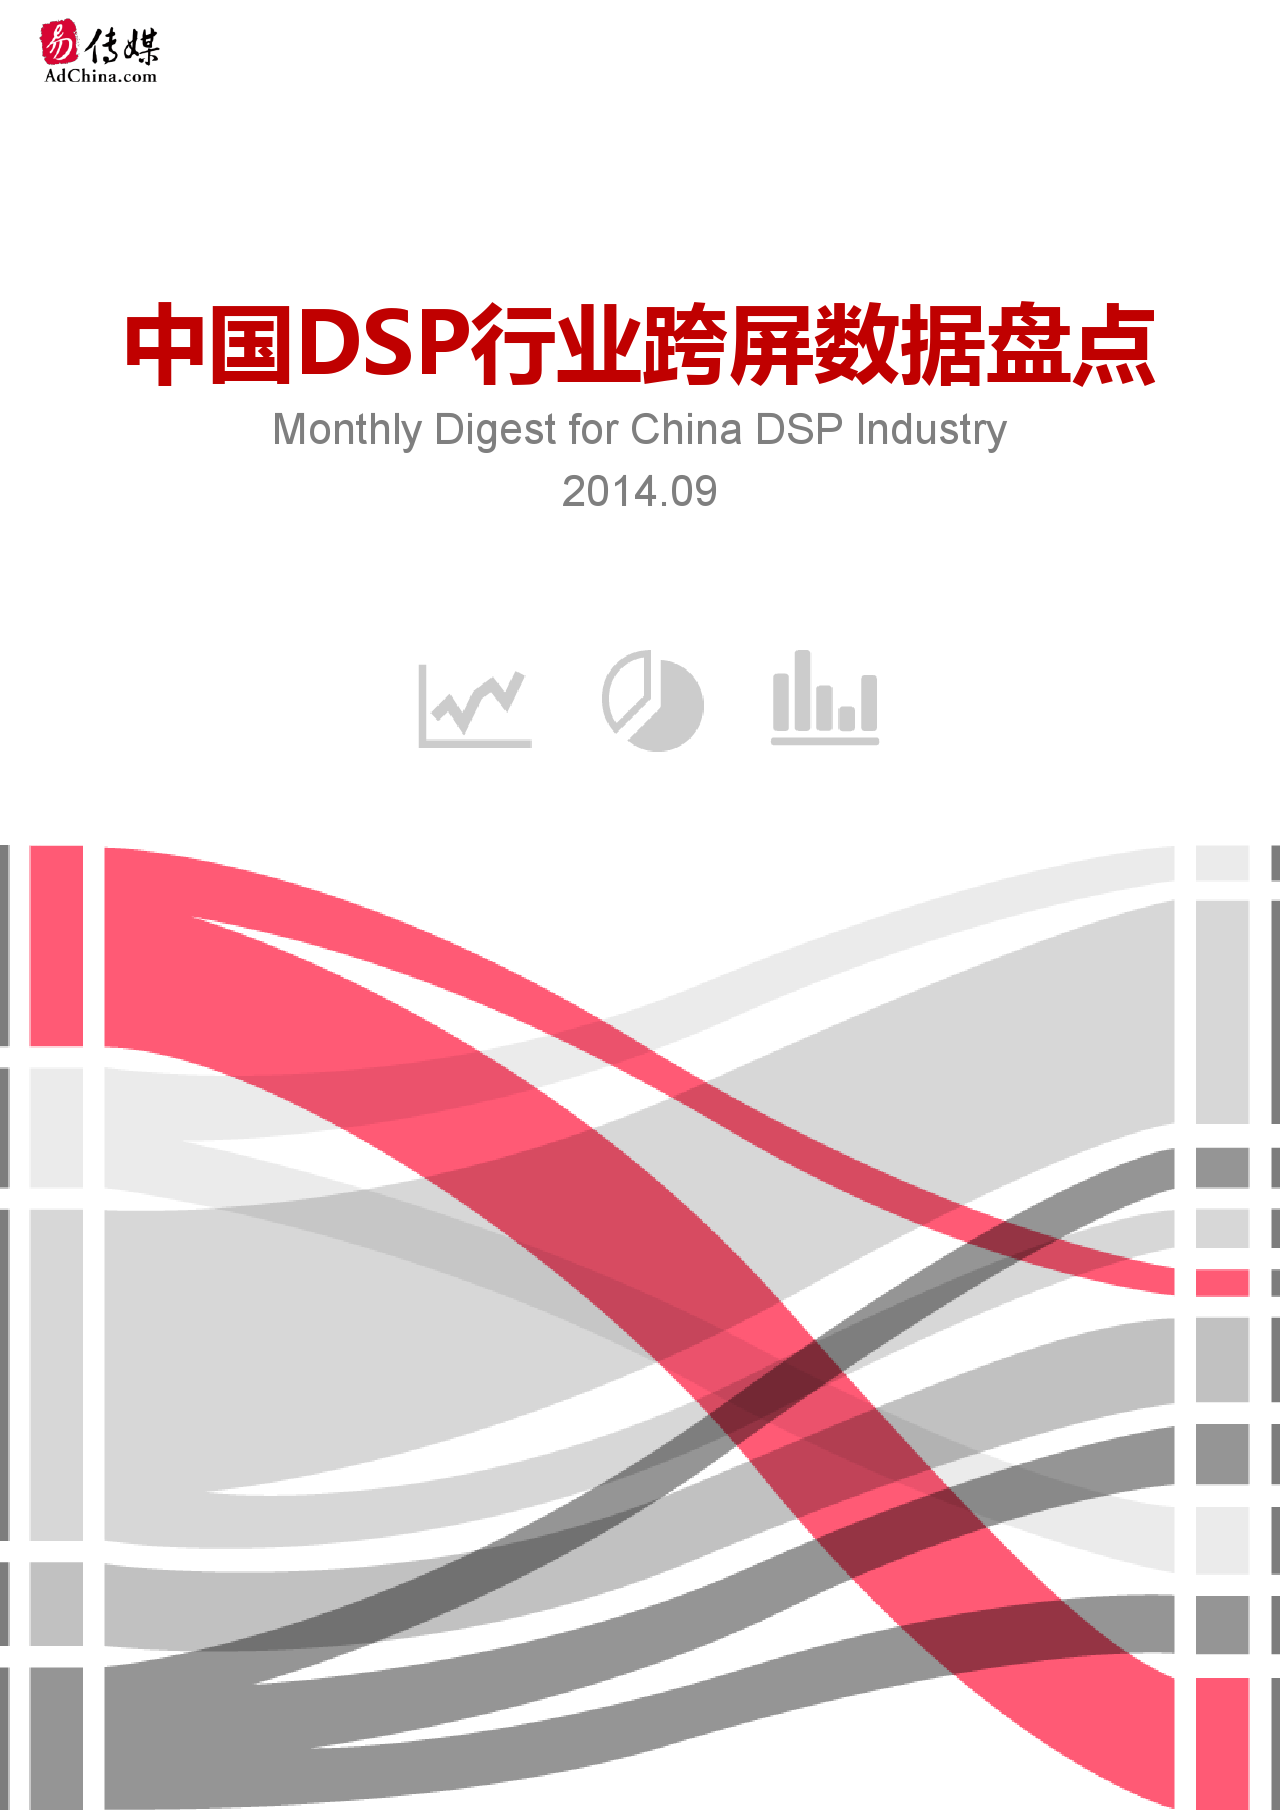 中国DSP行业跨屏数据盘点  9月份_000001